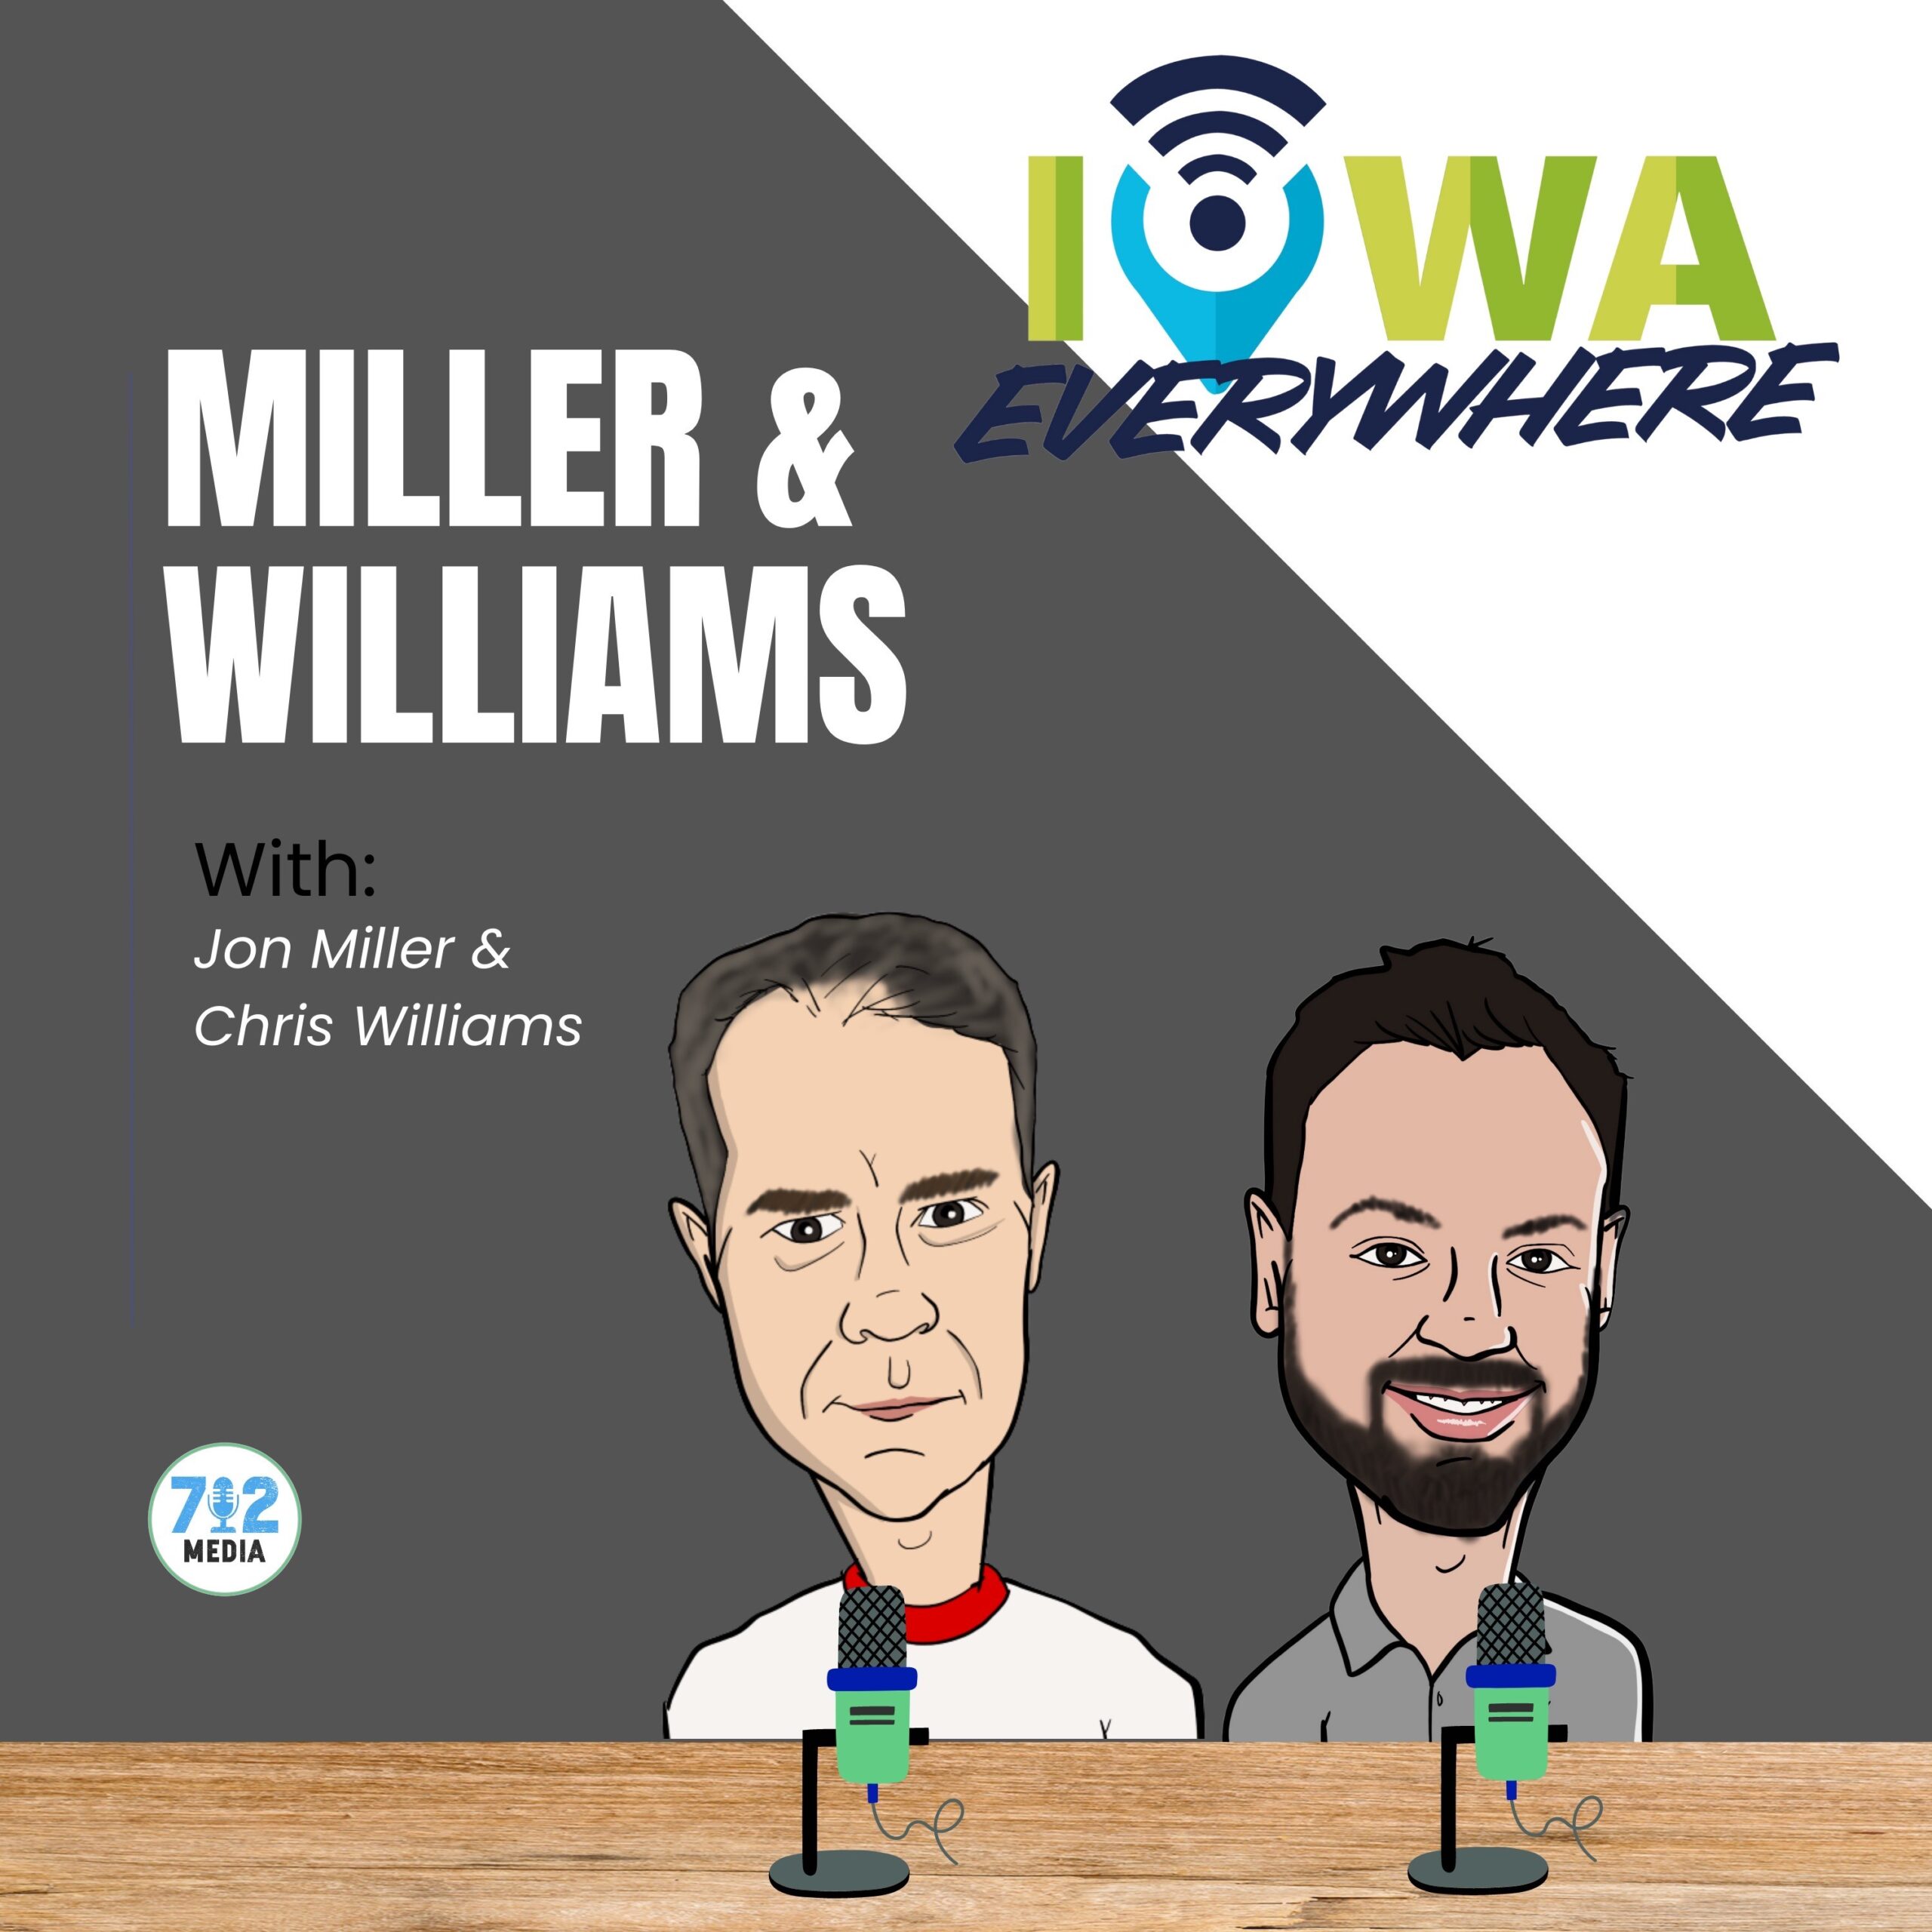 Miller & Williams